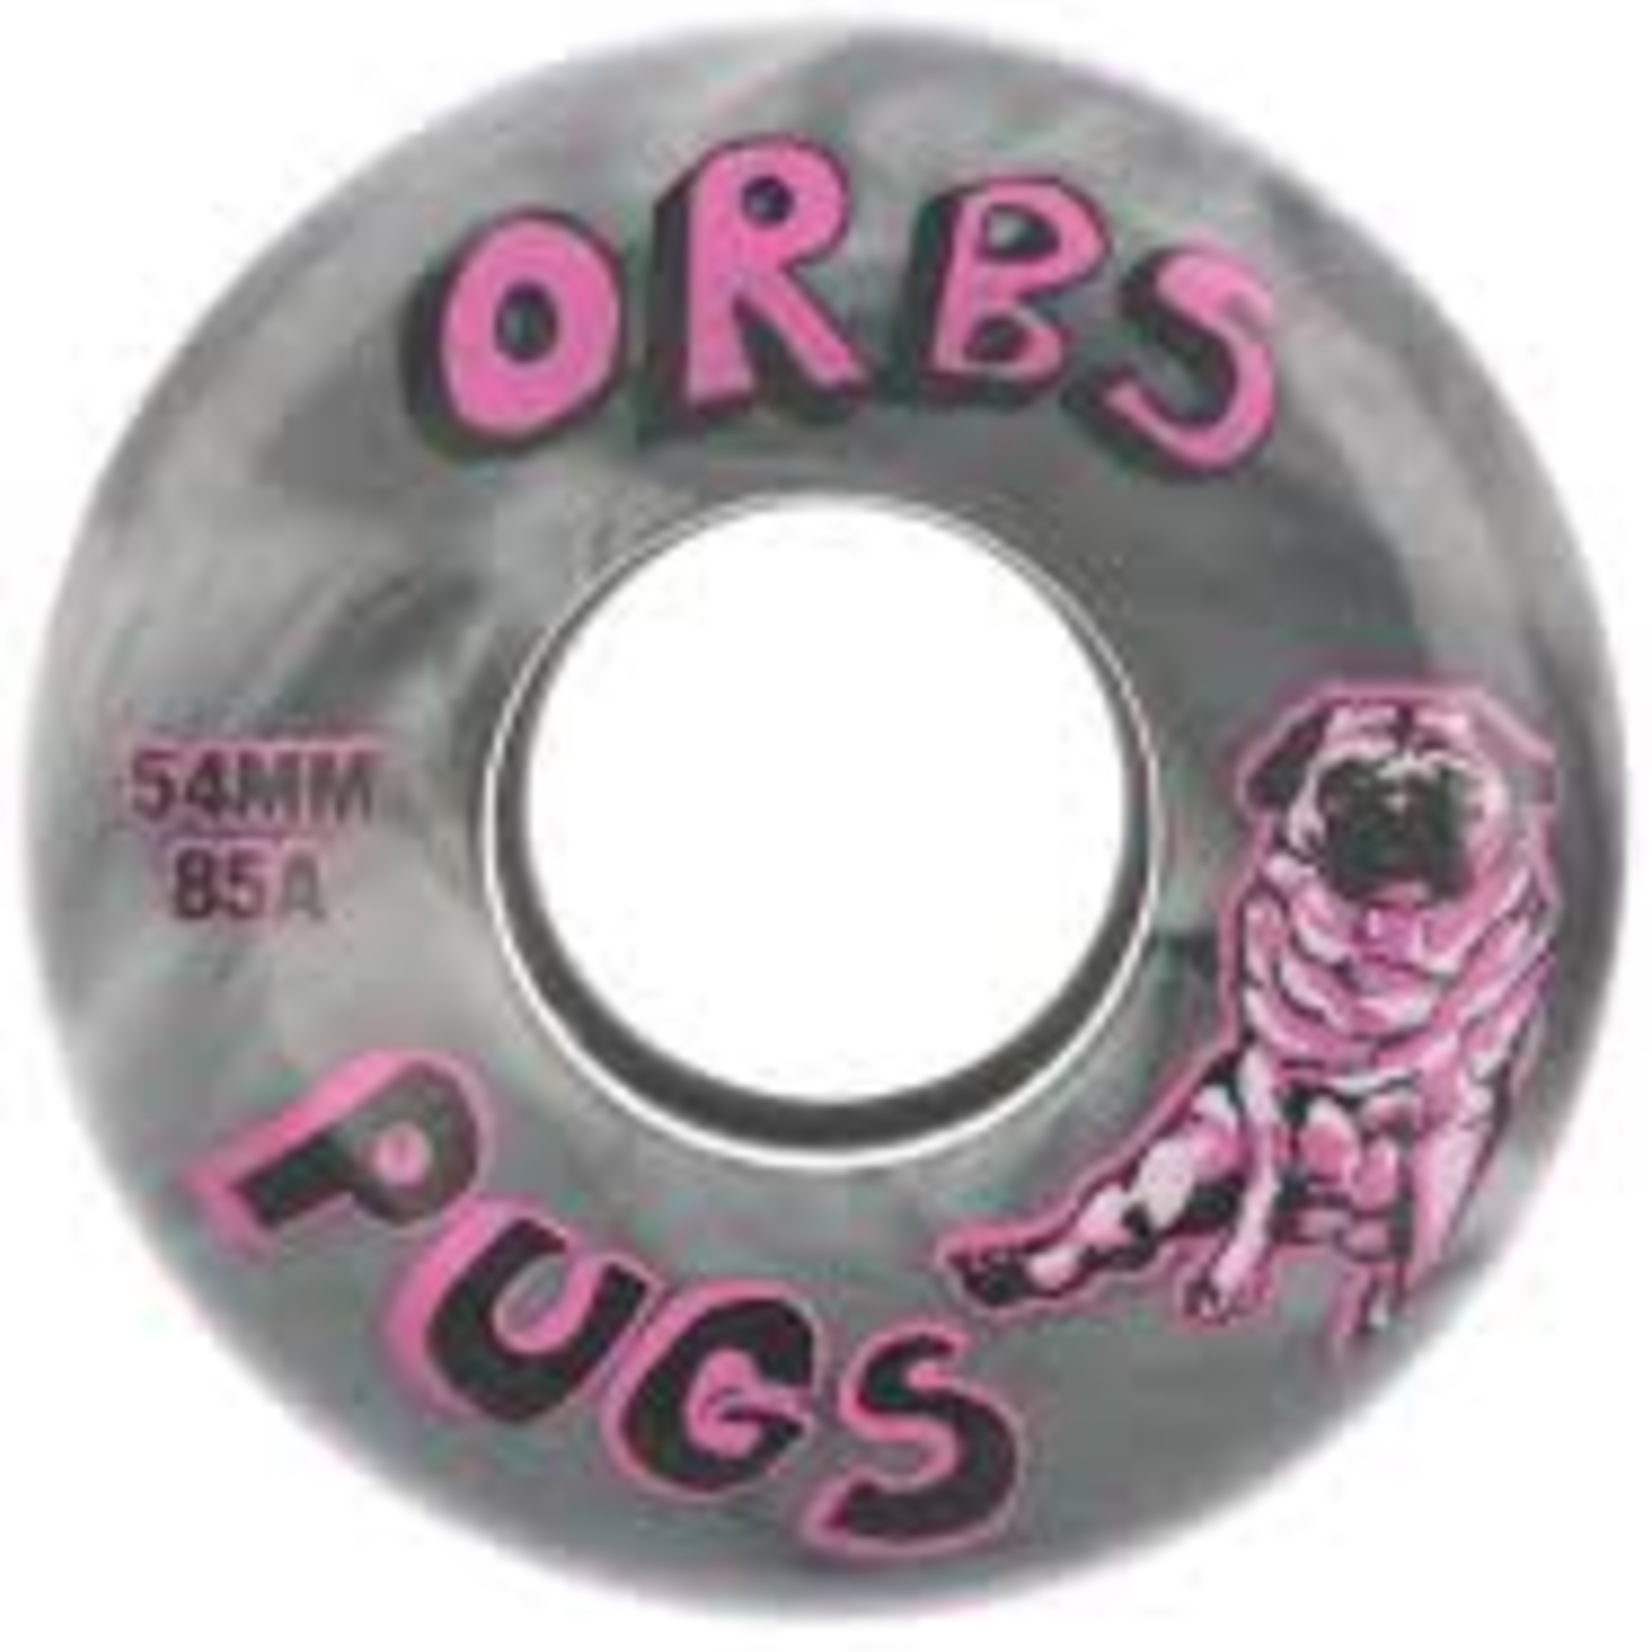 Orbs Orbs Pugs Wheels